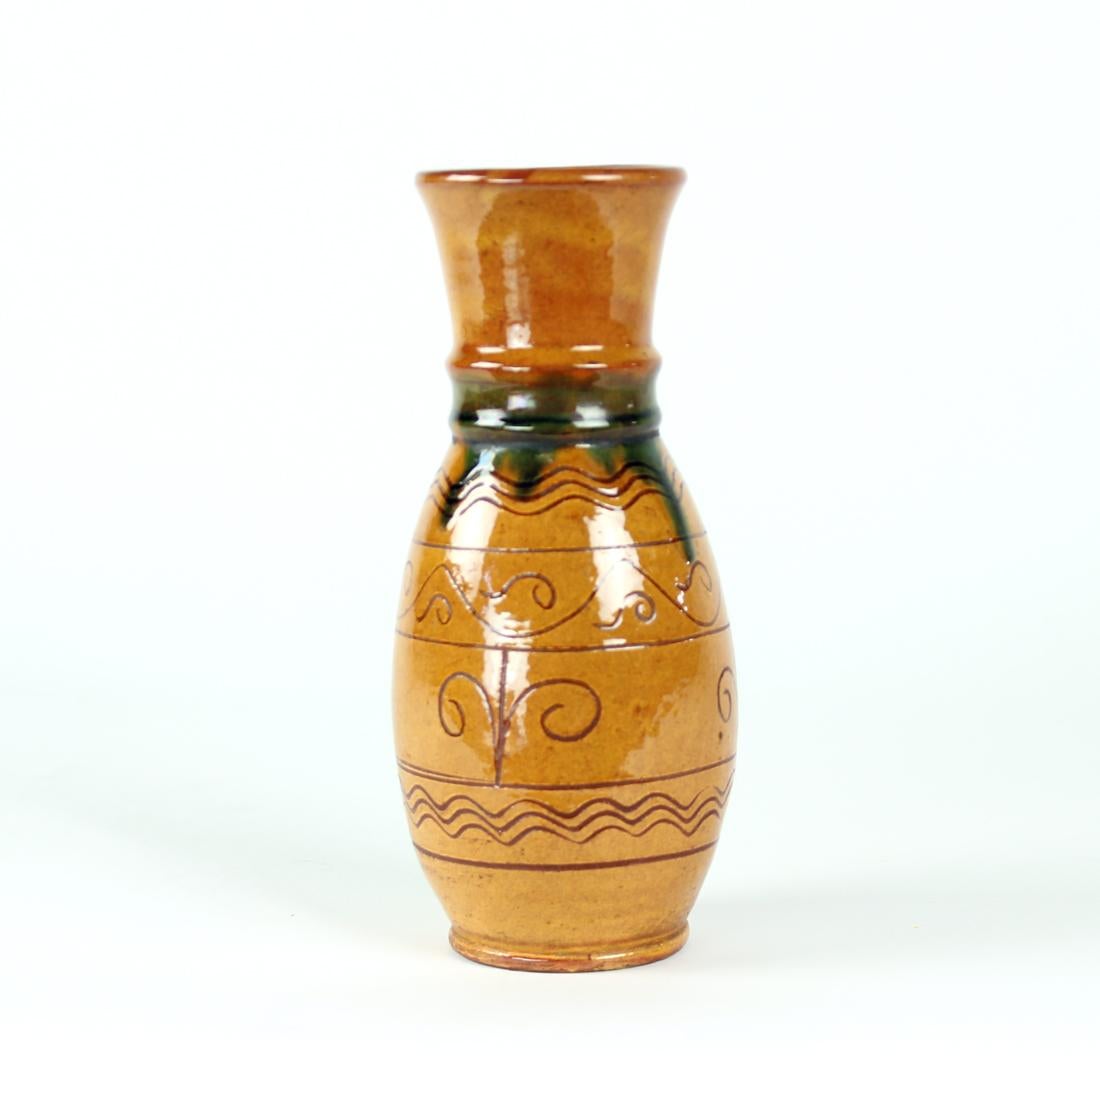 Magnifique vase vintage, en céramique avec finition émaillée. Design/One et combinaison de couleurs intéressants. Le vase est de couleur marron avec des détails bleus sur le col du vase. Il existe également des ornements d'art populaire sur l'argile